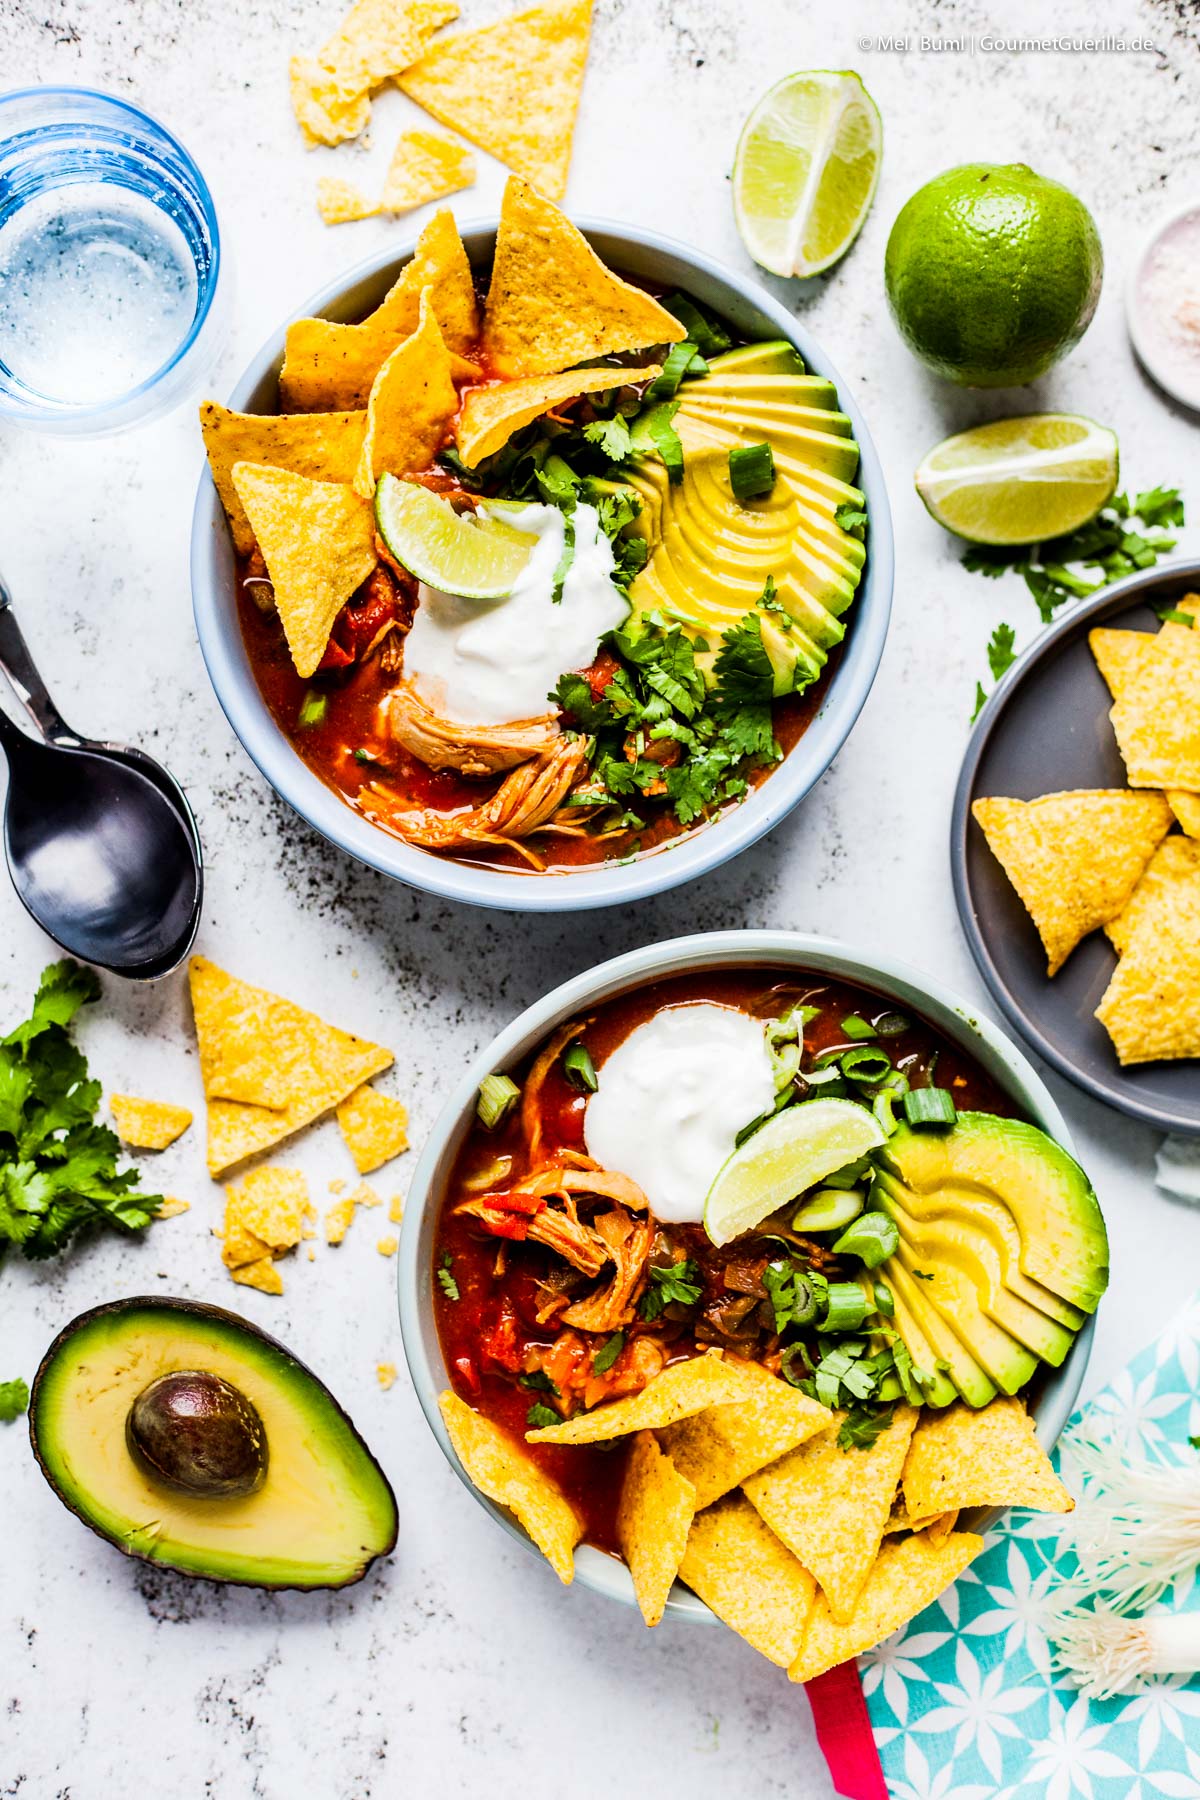 Mexican tortilla soup with avocado and chipotle | GourmetGuerilla.com